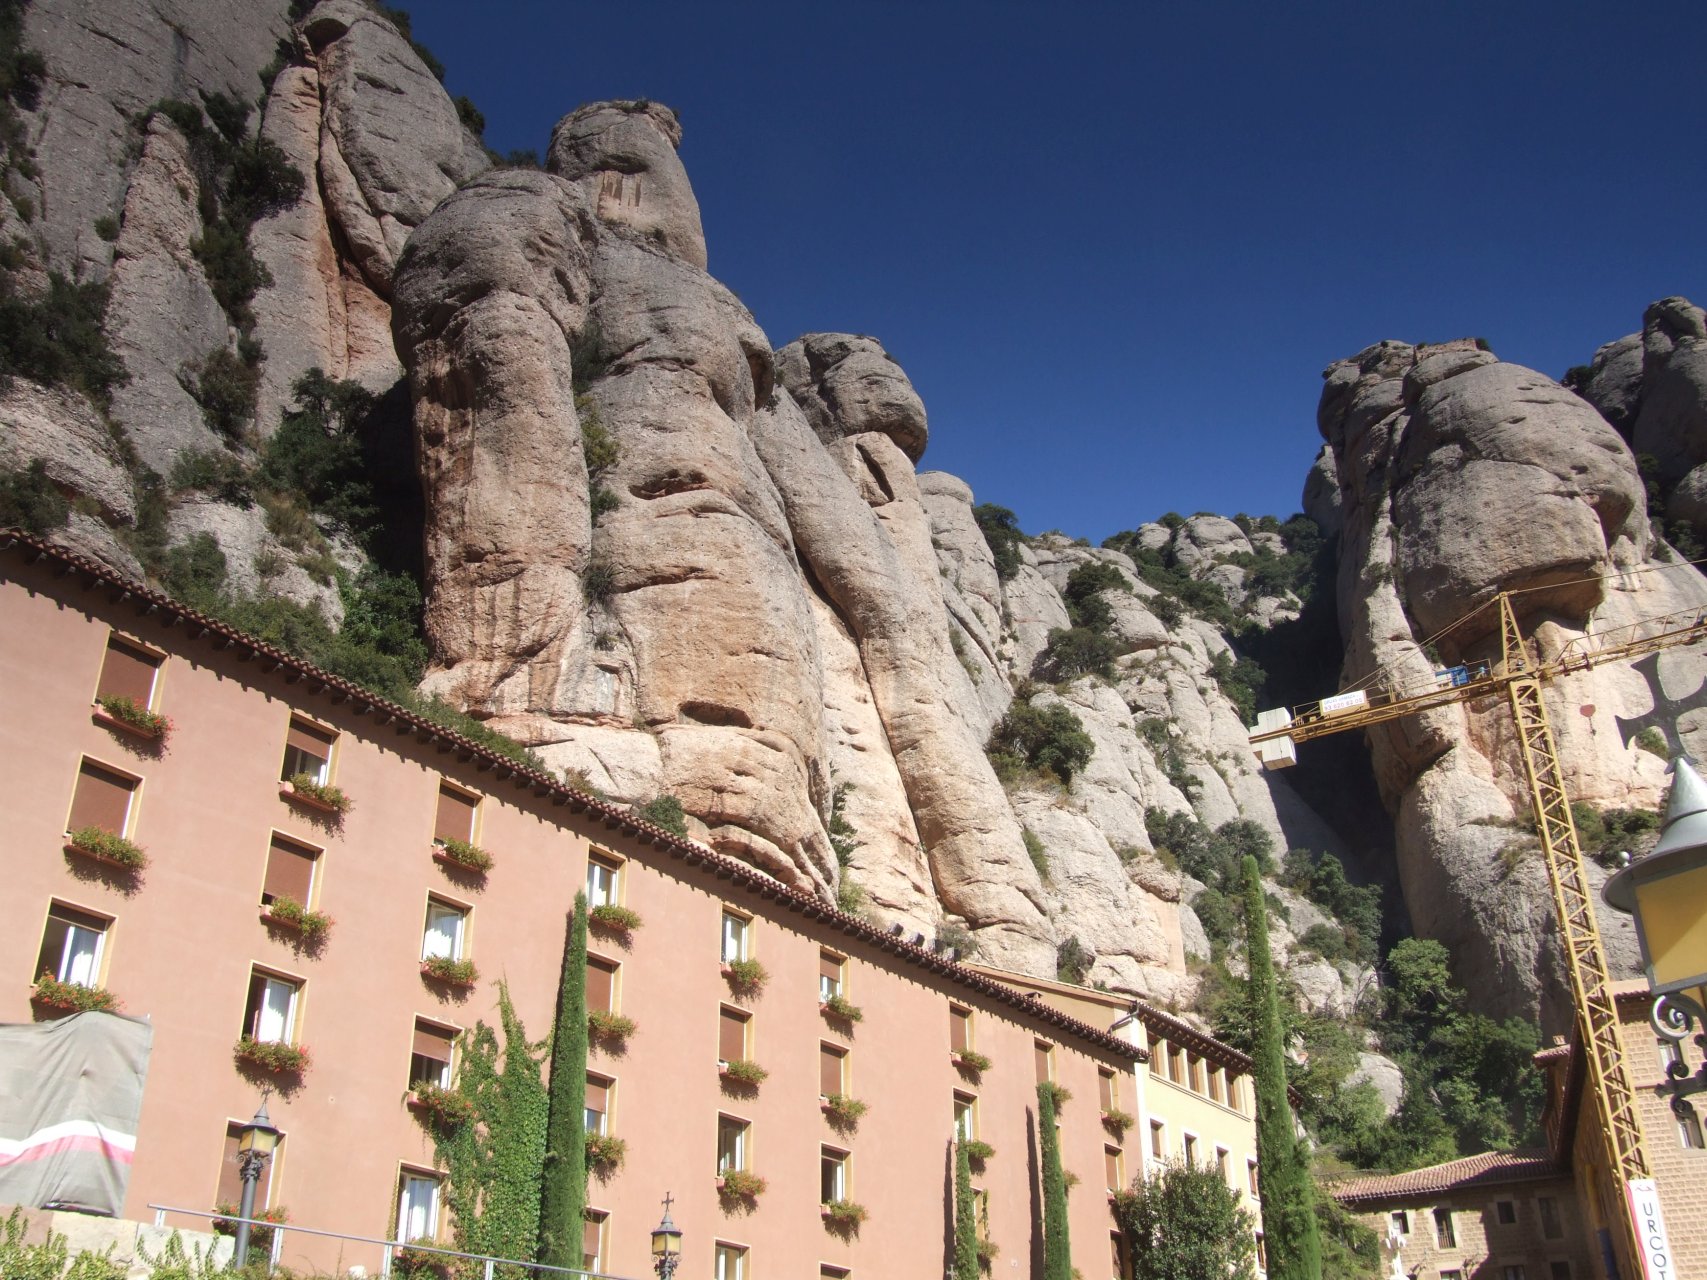 Klasztor Montserrat